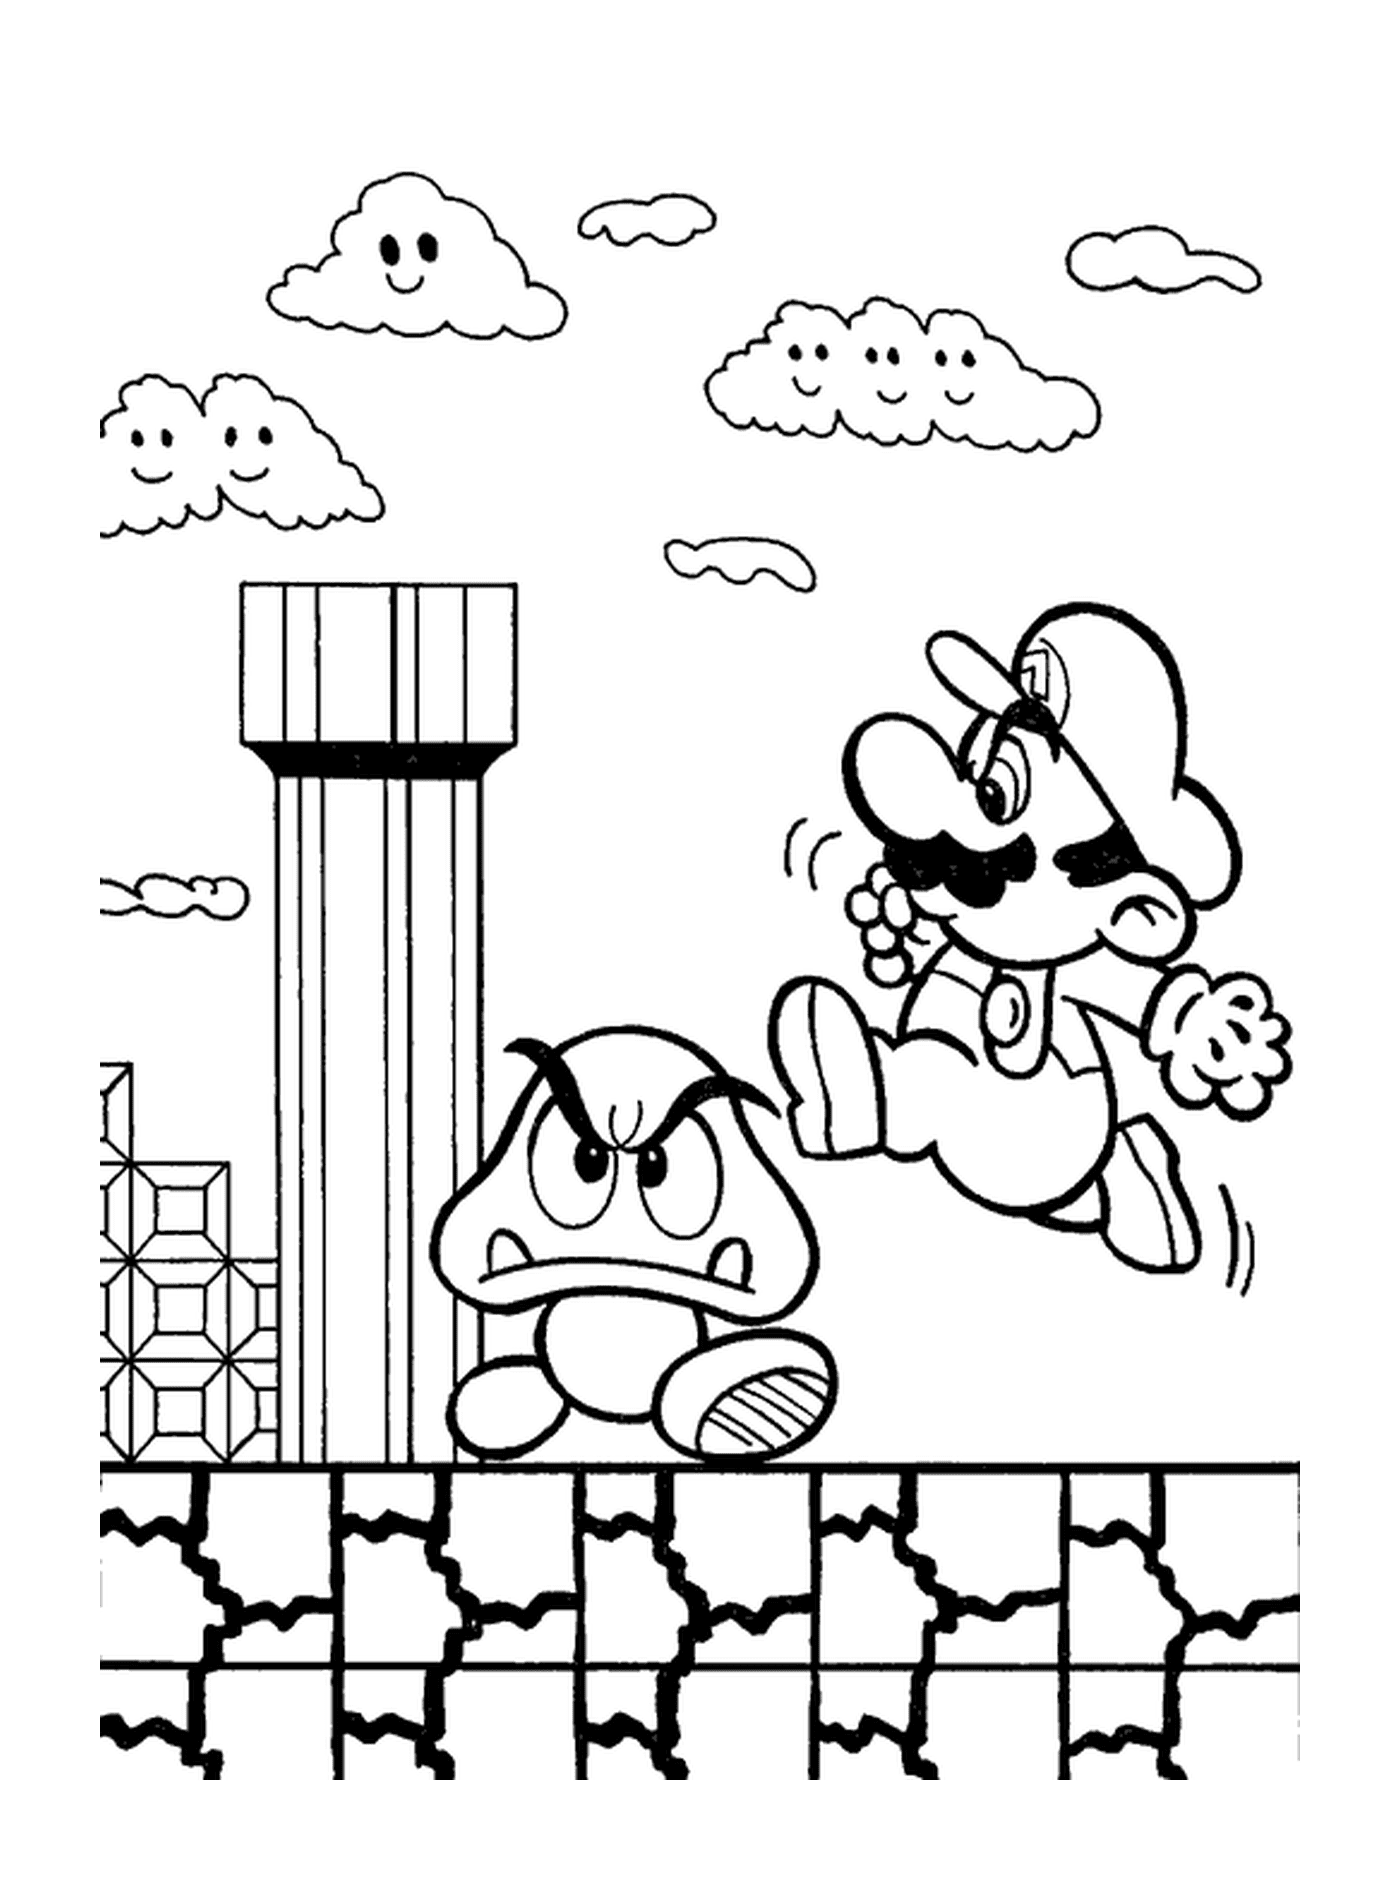  Mario salta sobre una seta mágica 